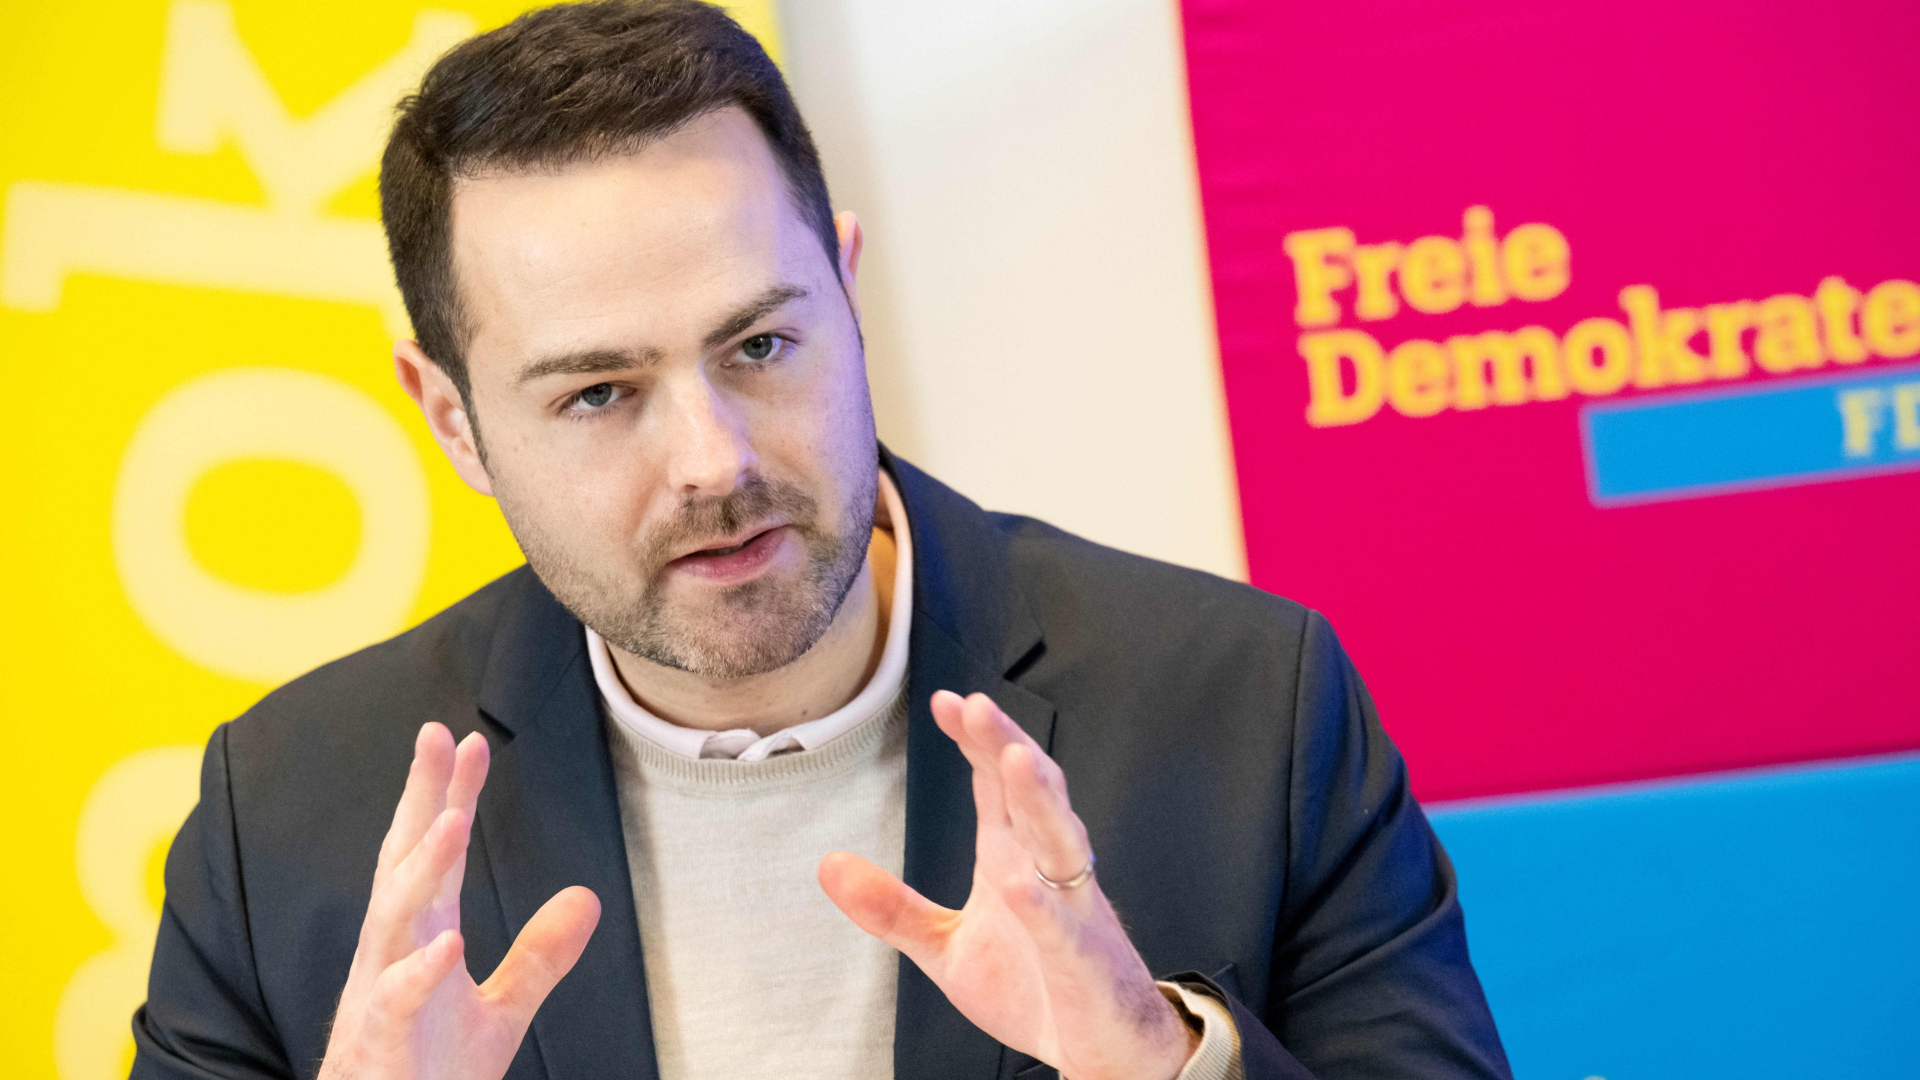 Thore Schäck, amtierender Landesvorsitzender der FDP Bremen, spricht beim Parteitag der FDP Bremen.